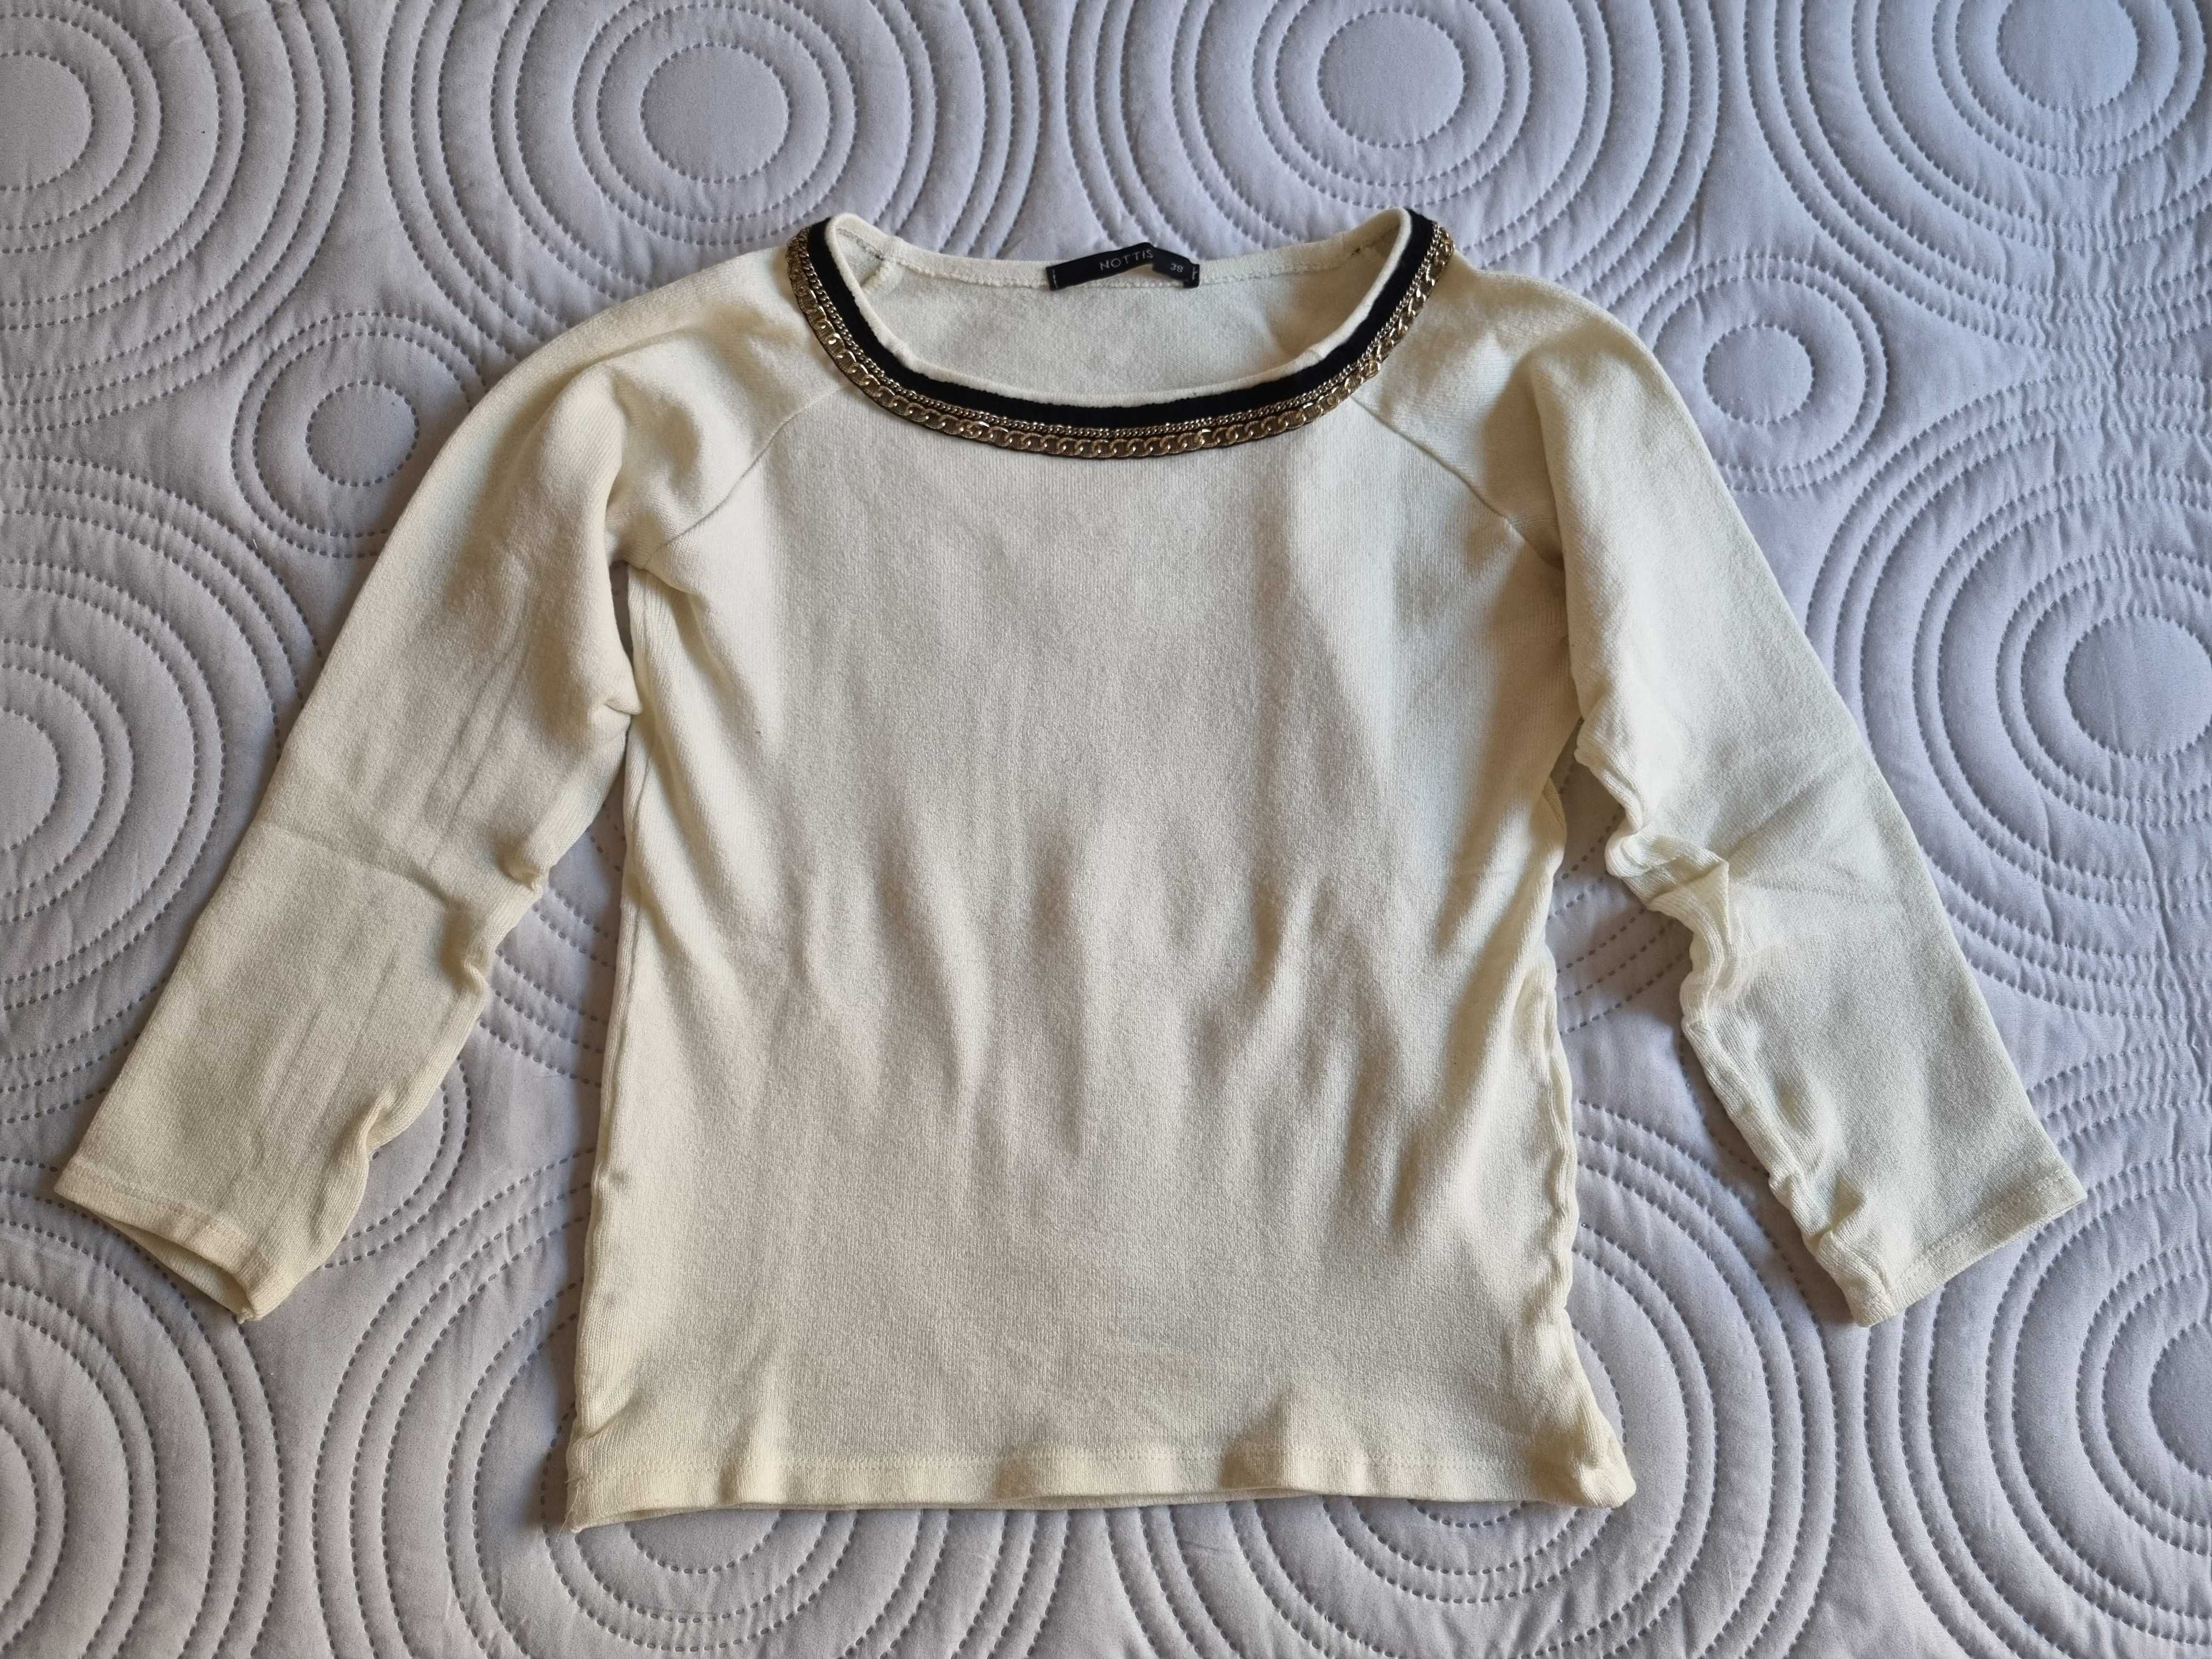 Kremowy sweter z ozdobnym łańcuszkiem, rozmiar 38